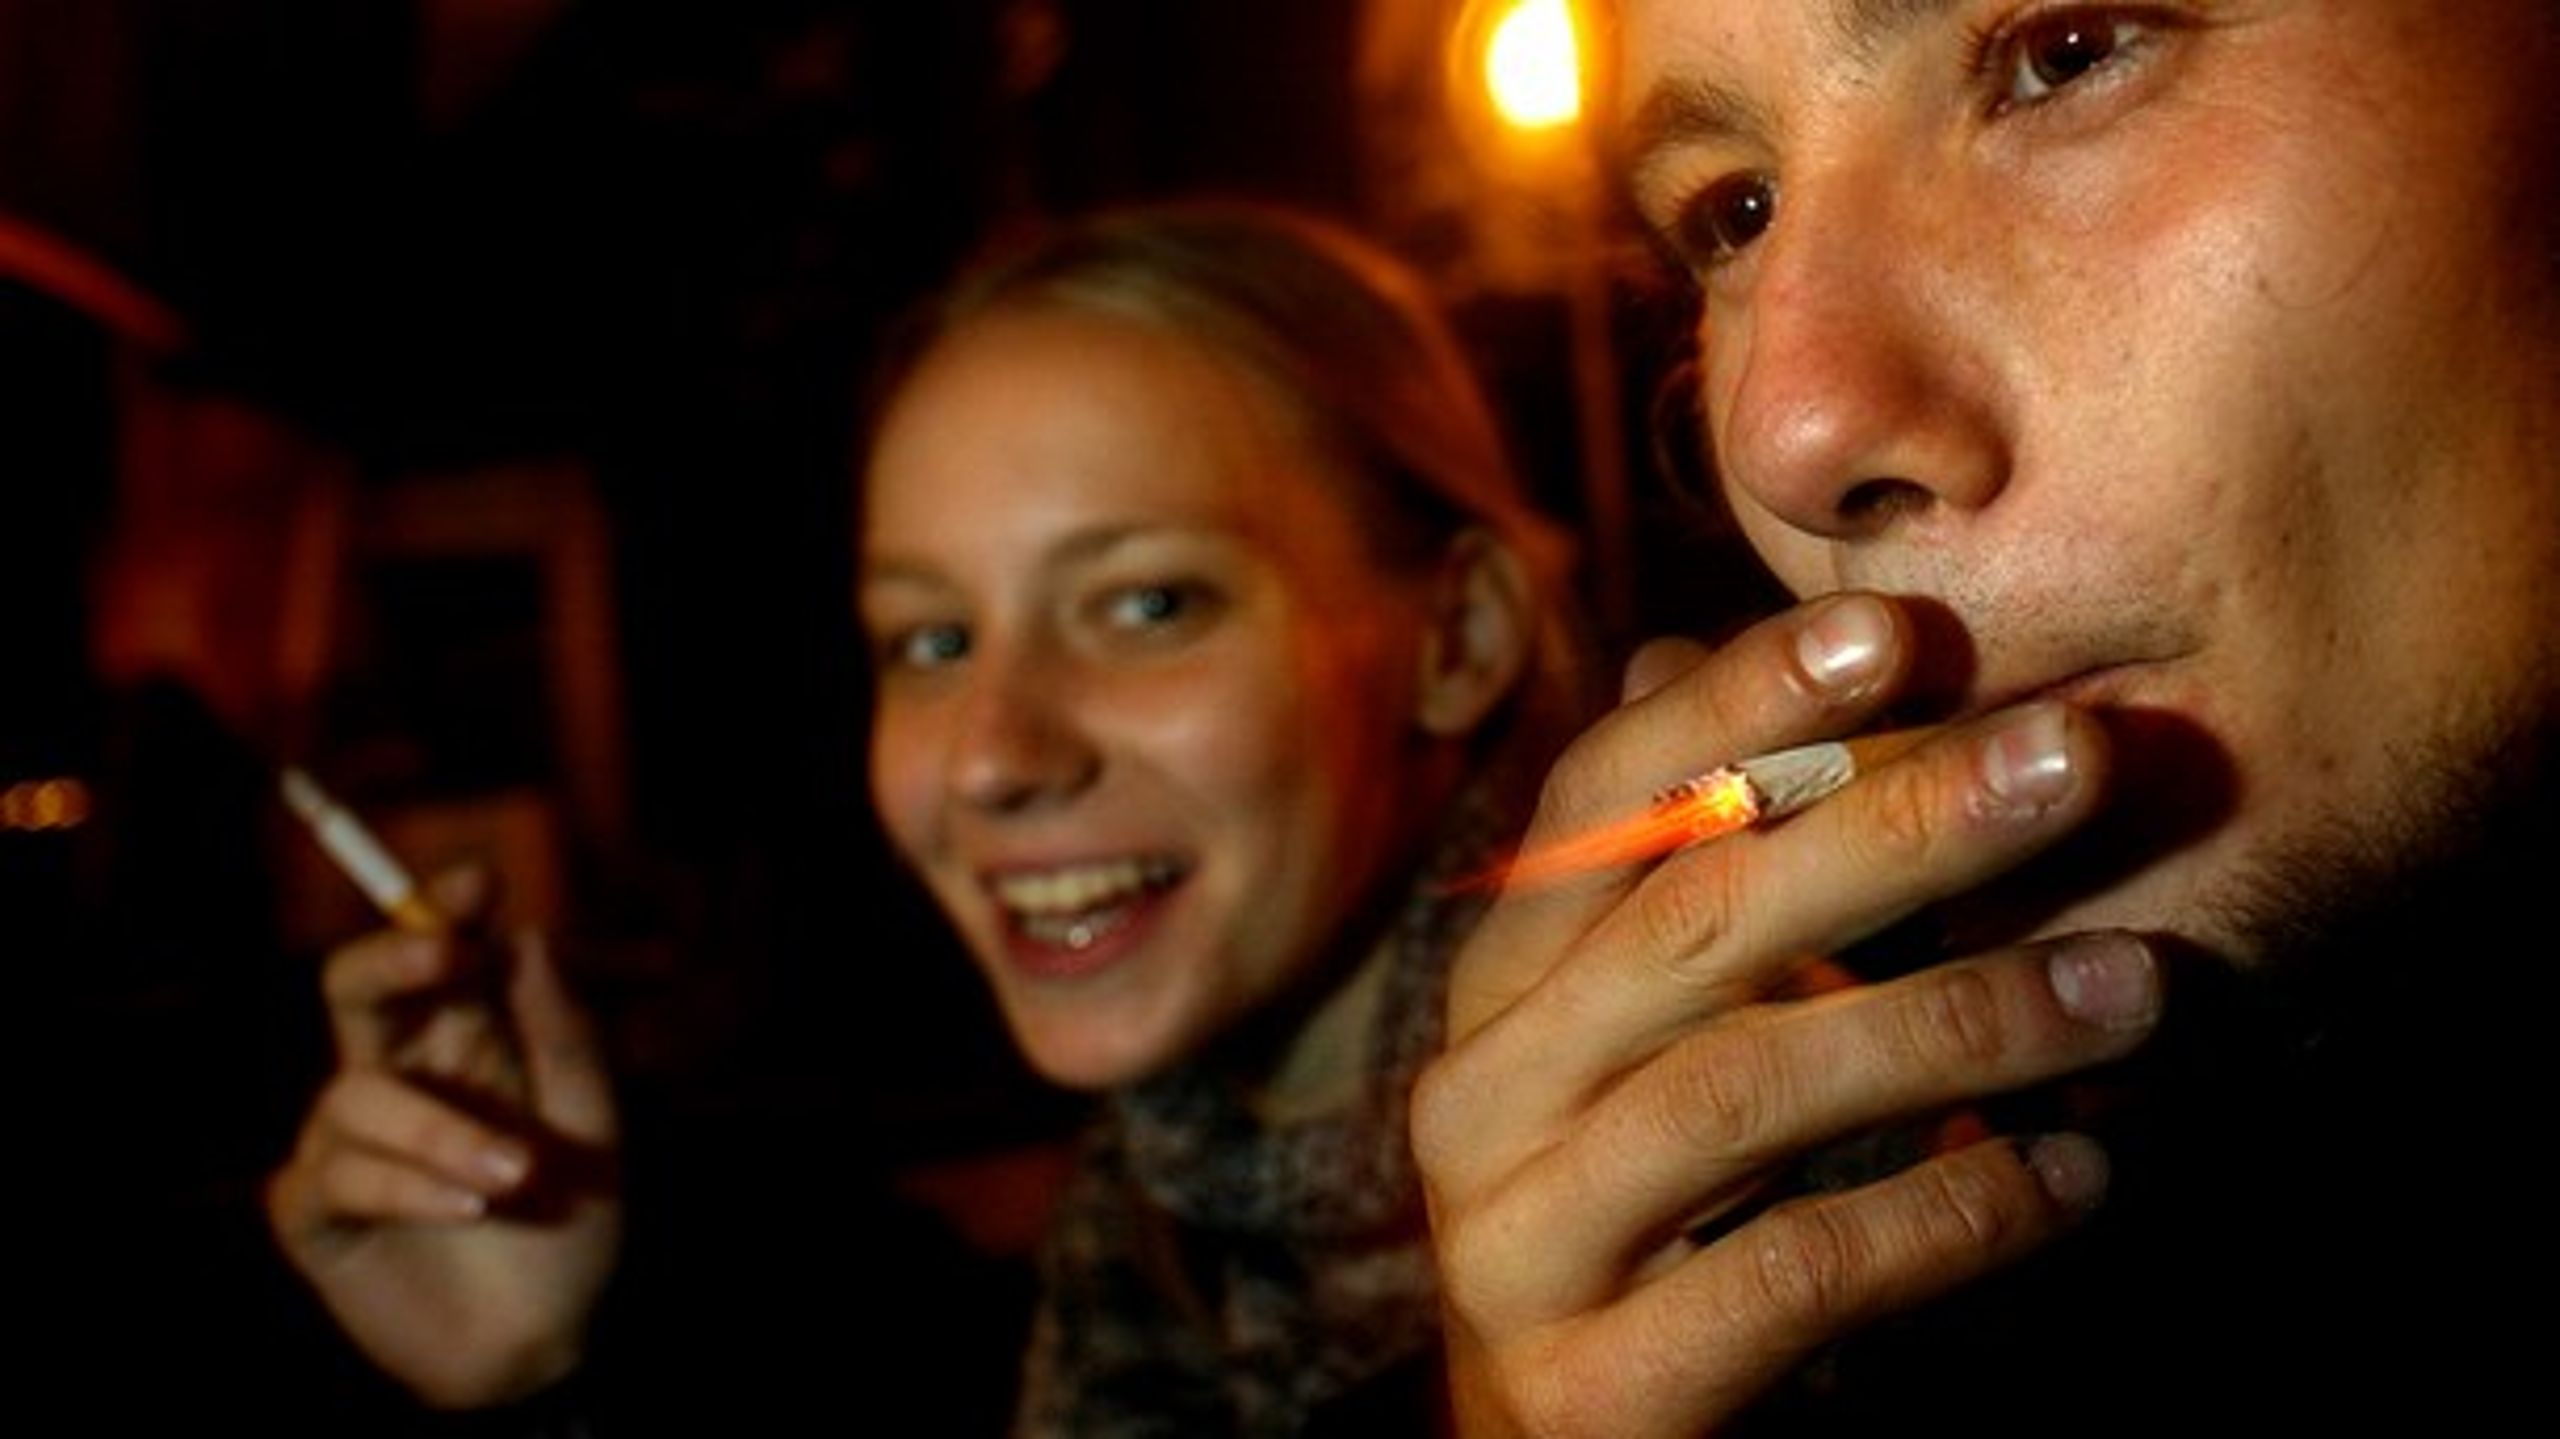 En stigende andel af danske unge begynder at ryge. Det vil et politisk flertal ændre med prisstigninger på cigaretter.